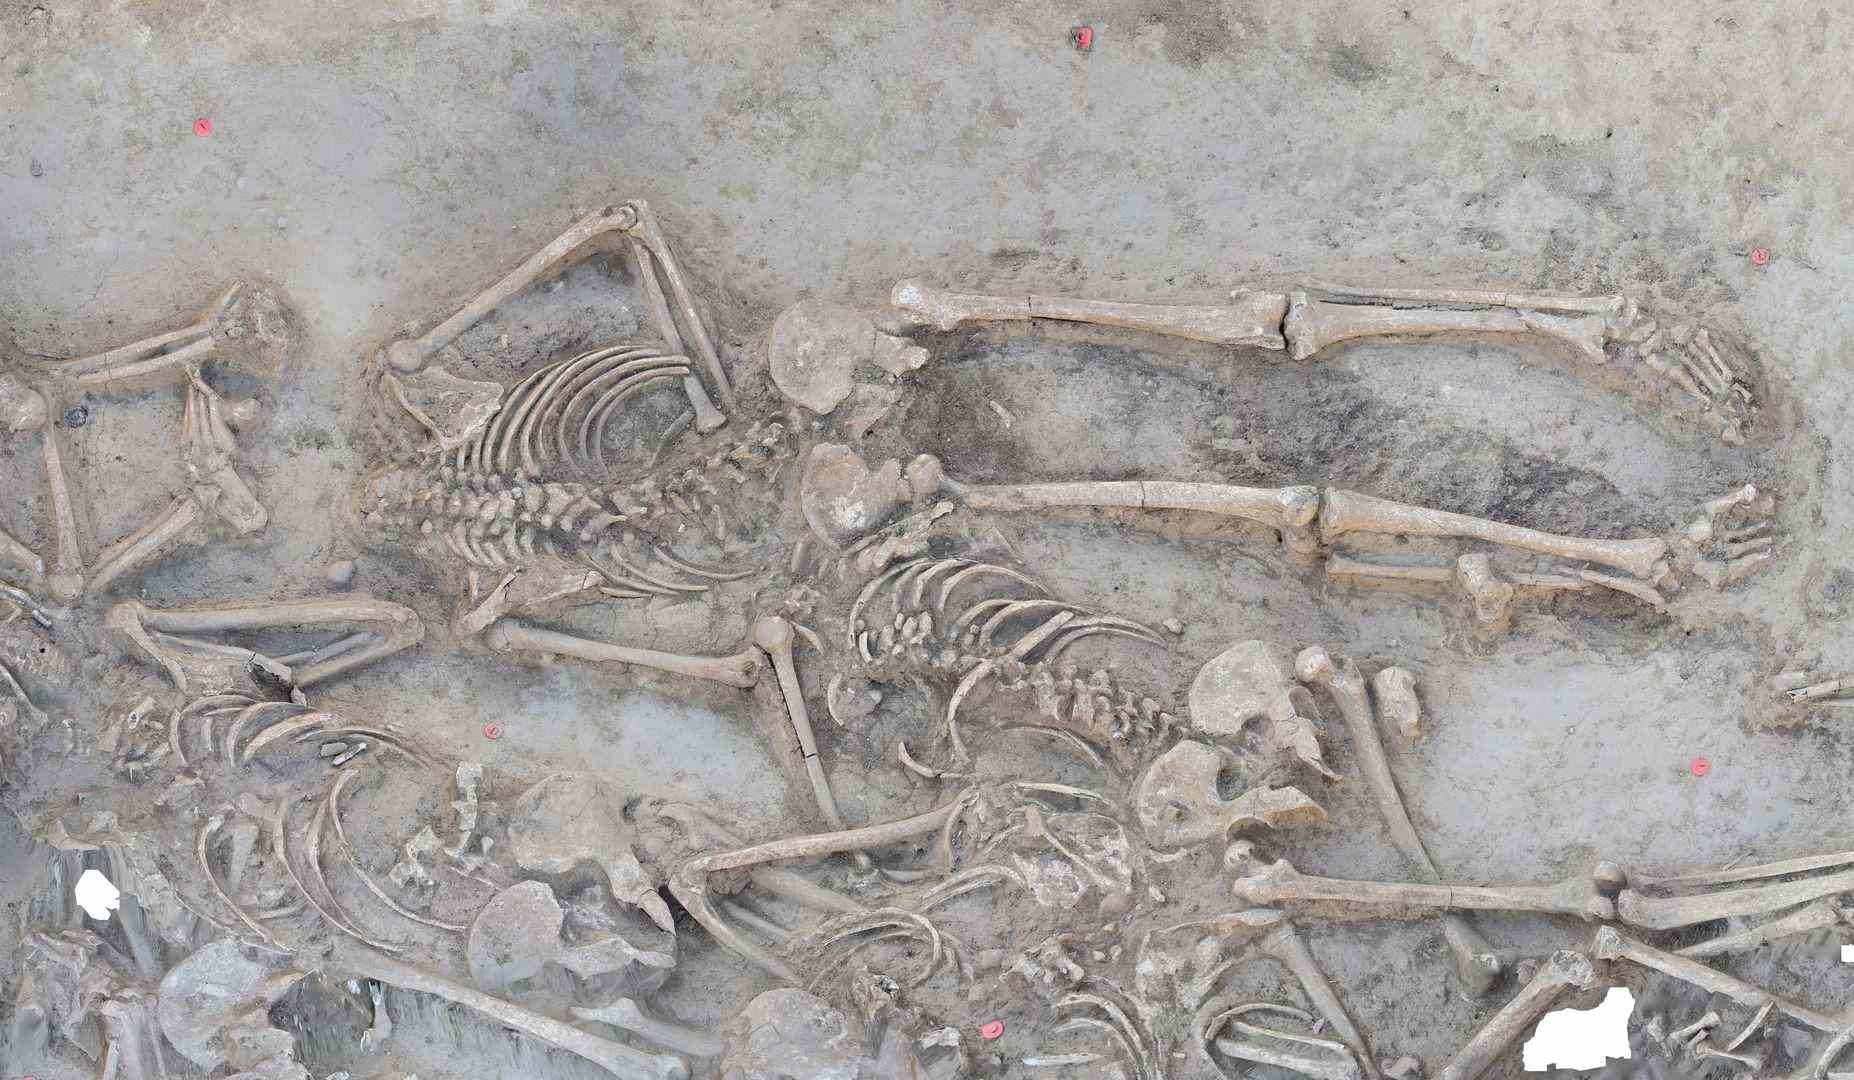 Археологи нашли неолитическое захоронение с безголовыми скелетами